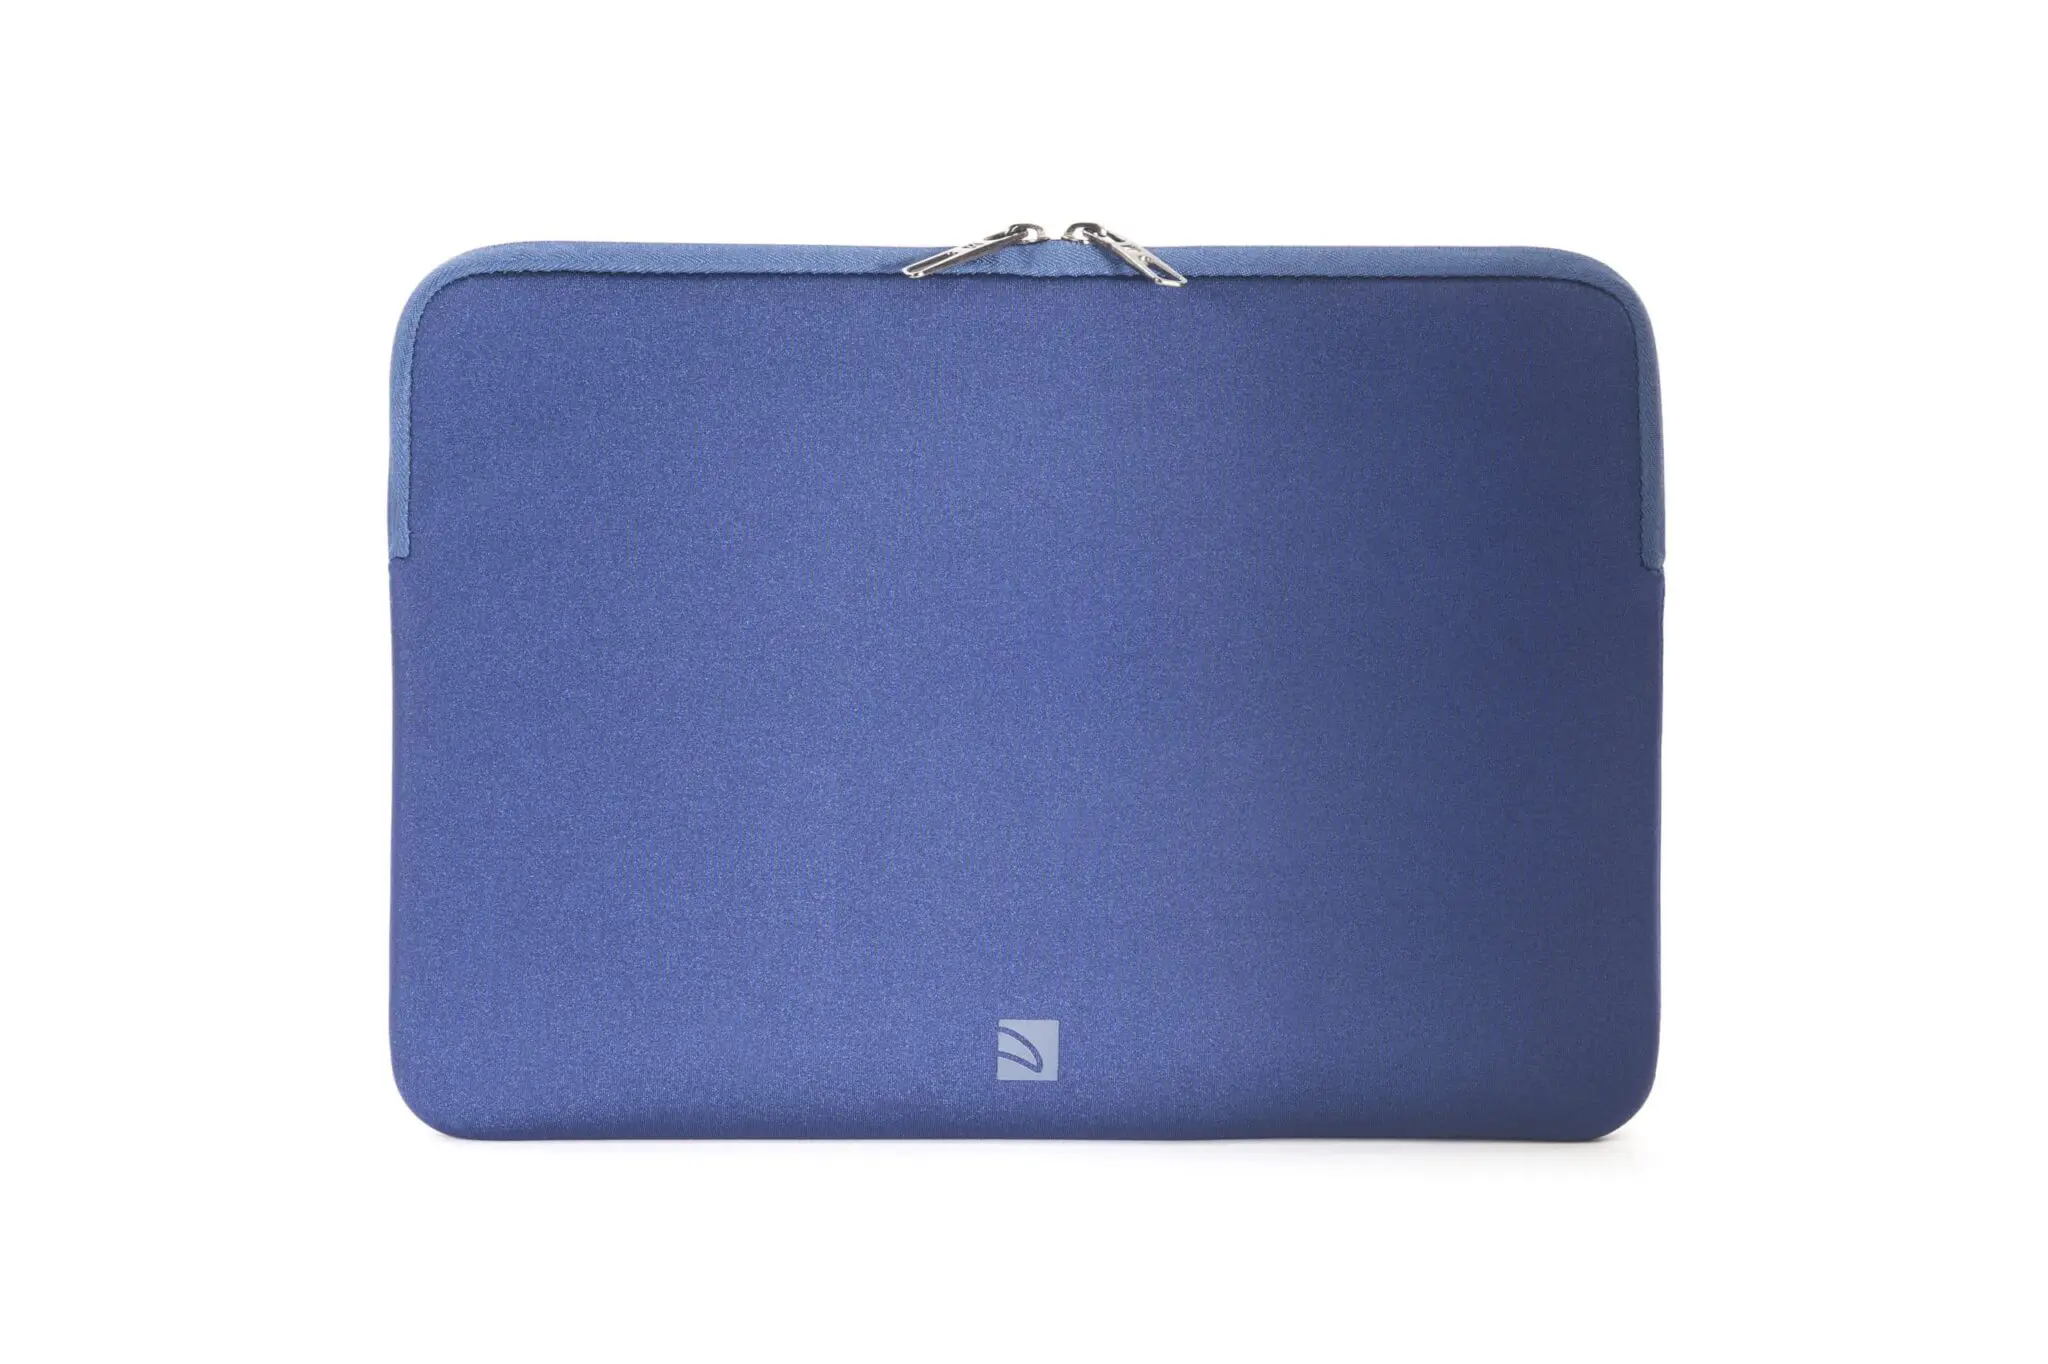 ซองโน๊ตบุ๊ค Tucano รุ่น Elements Second Skin Sleeve in Neoprene and Nylon - MacBook Air/Pro 13" and Laptop 12" - น้ำเงิน